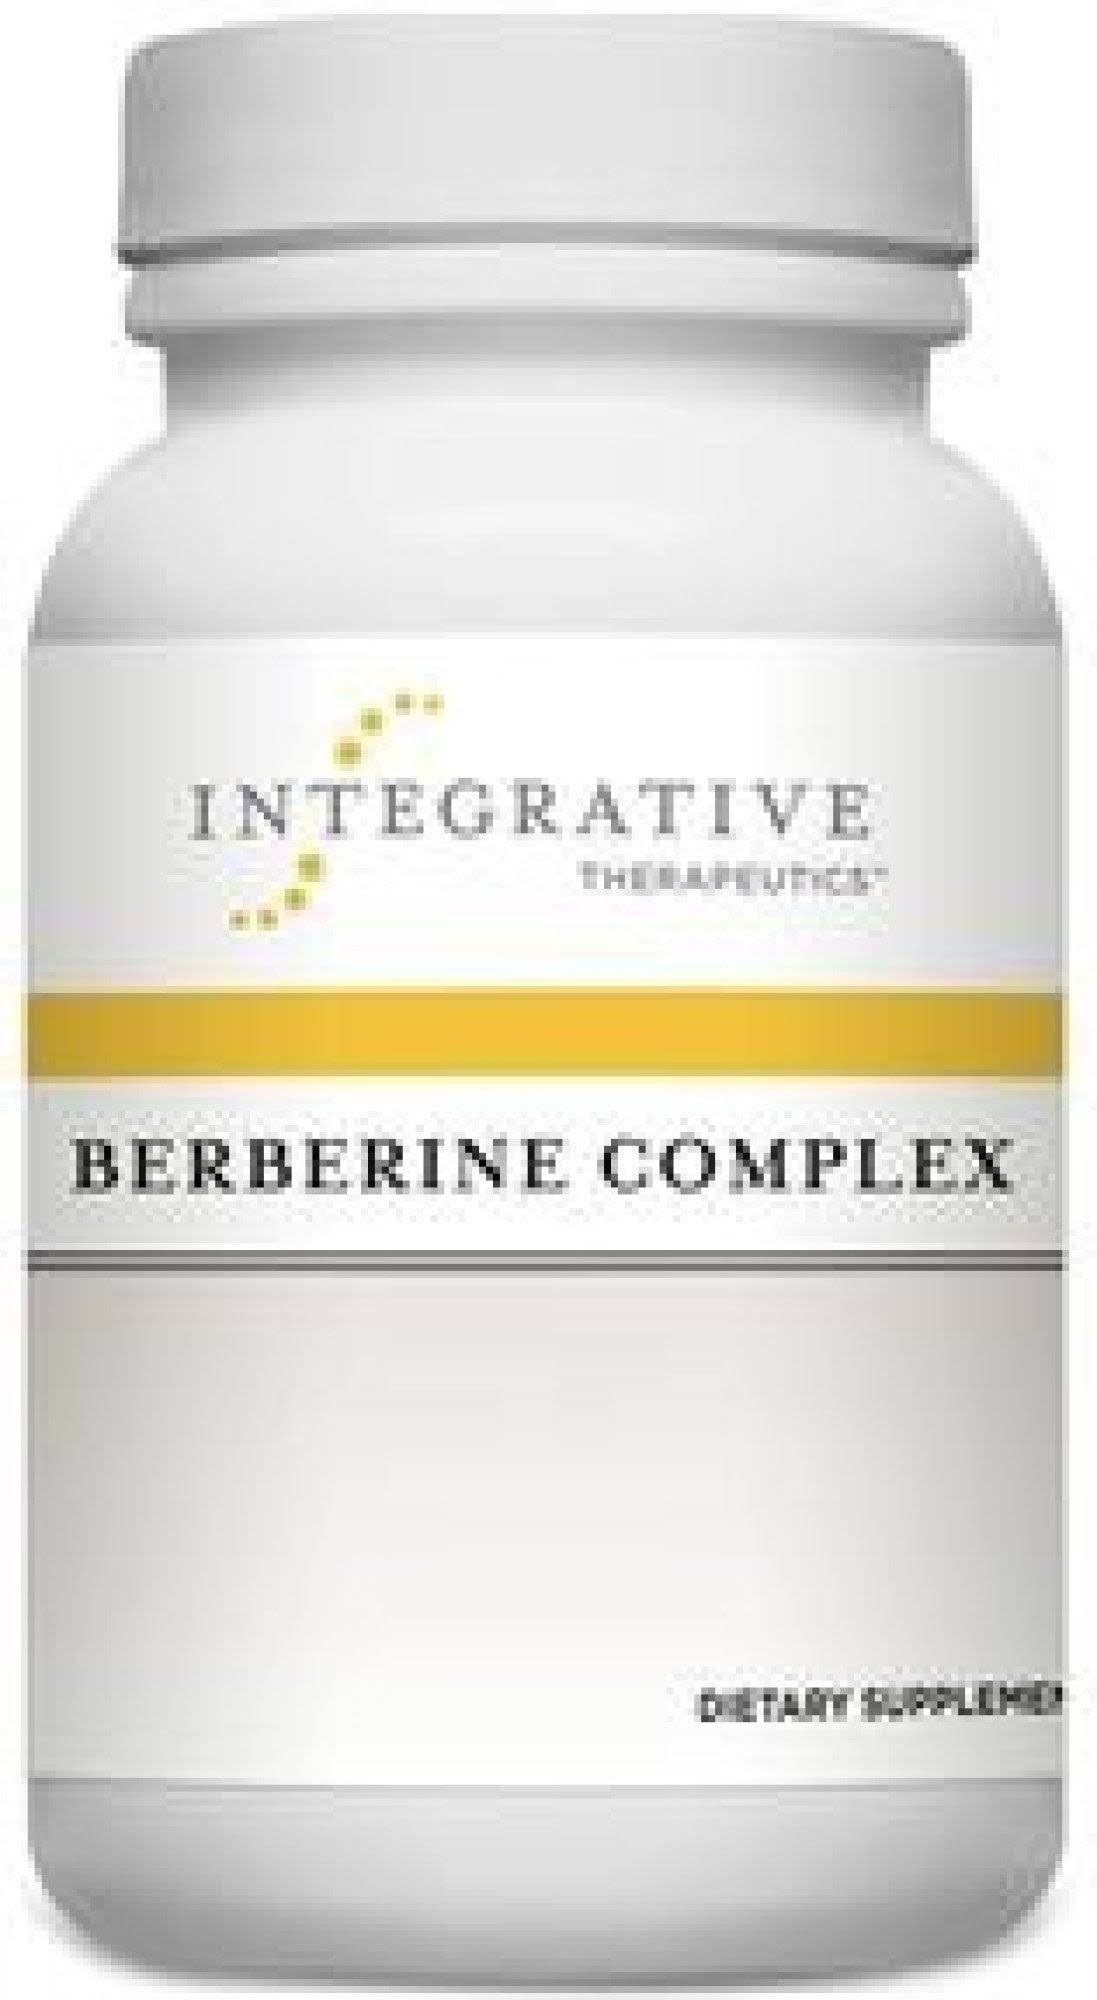 Integrative Therapeutics Berberine Complex - 90ct